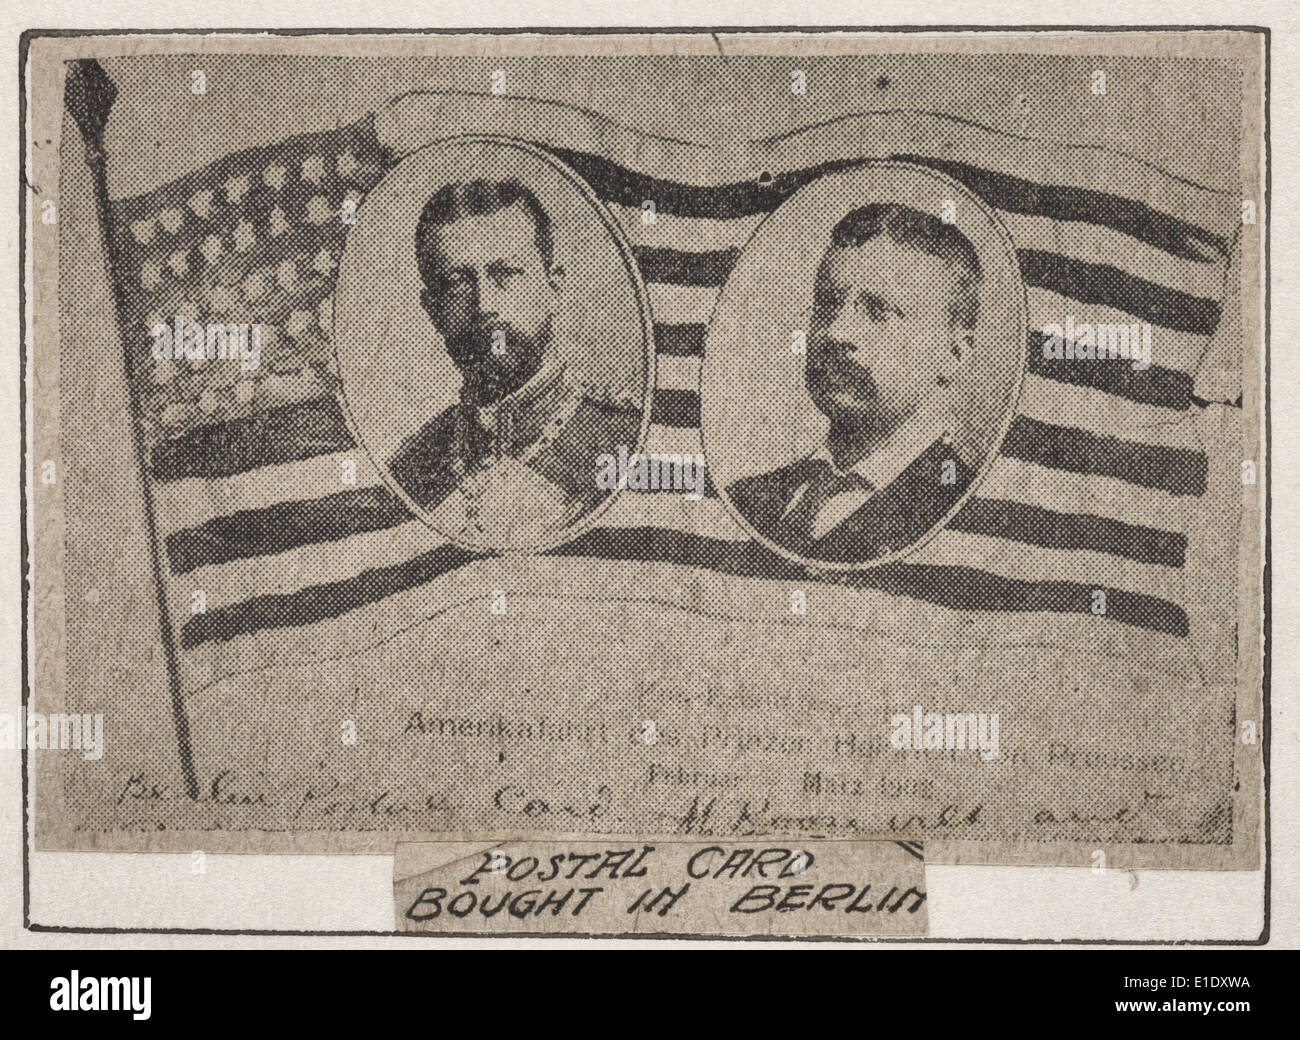 Postkarte in Berlin gekauft.  Drucken (wahrscheinlich ein Zeitungsausschnitt) zeigt Porträts von Präsident Theodore Roosevelt und Prinz Heinrich von Preußen auf die amerikanische Flagge, ca. 1905 Stockfoto